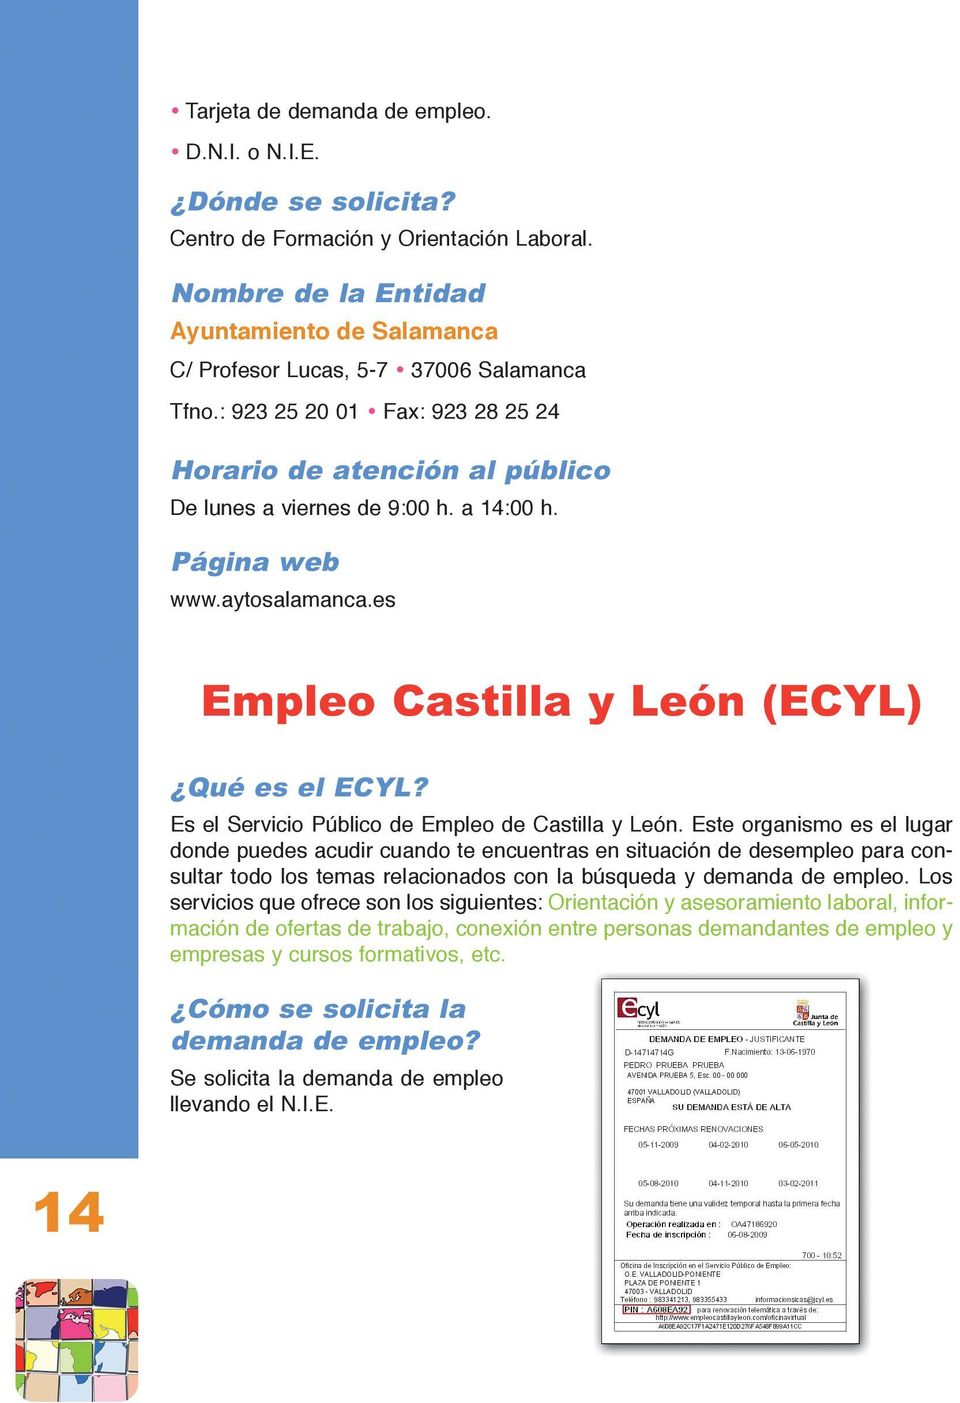 Es el Servicio Público de Empleo de Castilla y León.